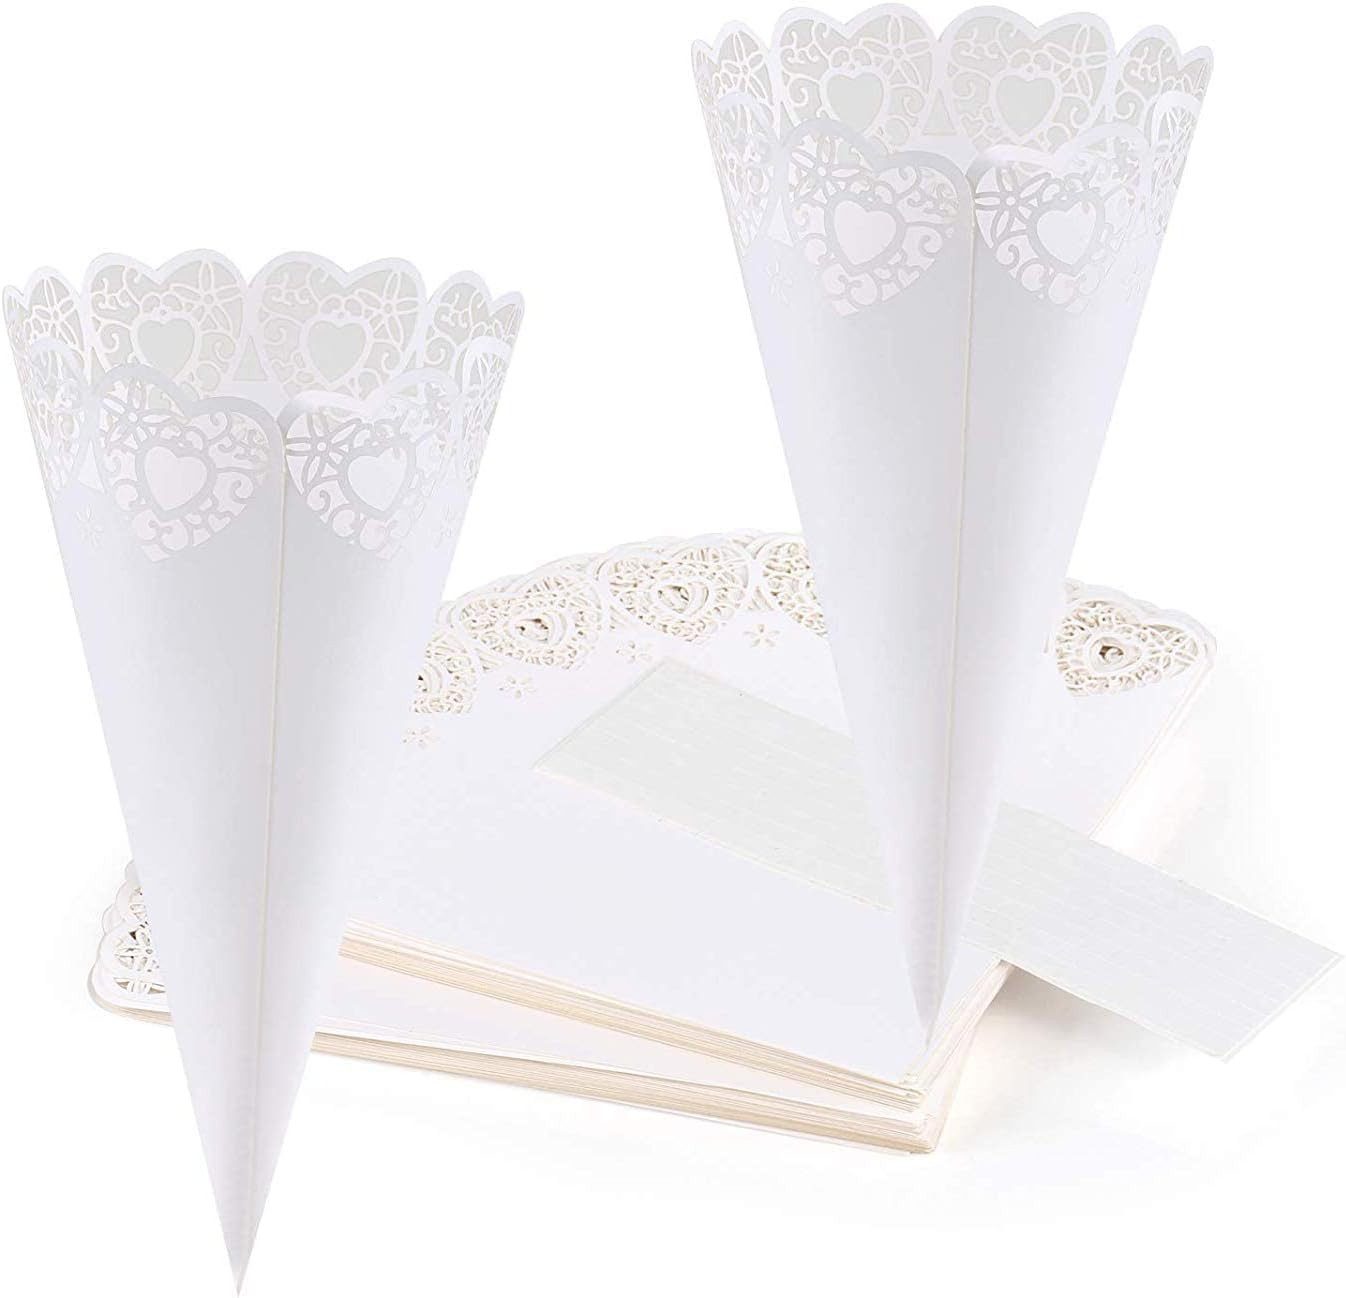 Fivejoy Konfetti 50 Stück Hochzeits-Konfetti-Kegel für Blütenblätter, Weiß, Konfetti Konus Tüten Deko Herz-Papierkegel für Süßigkeiten-Buffet